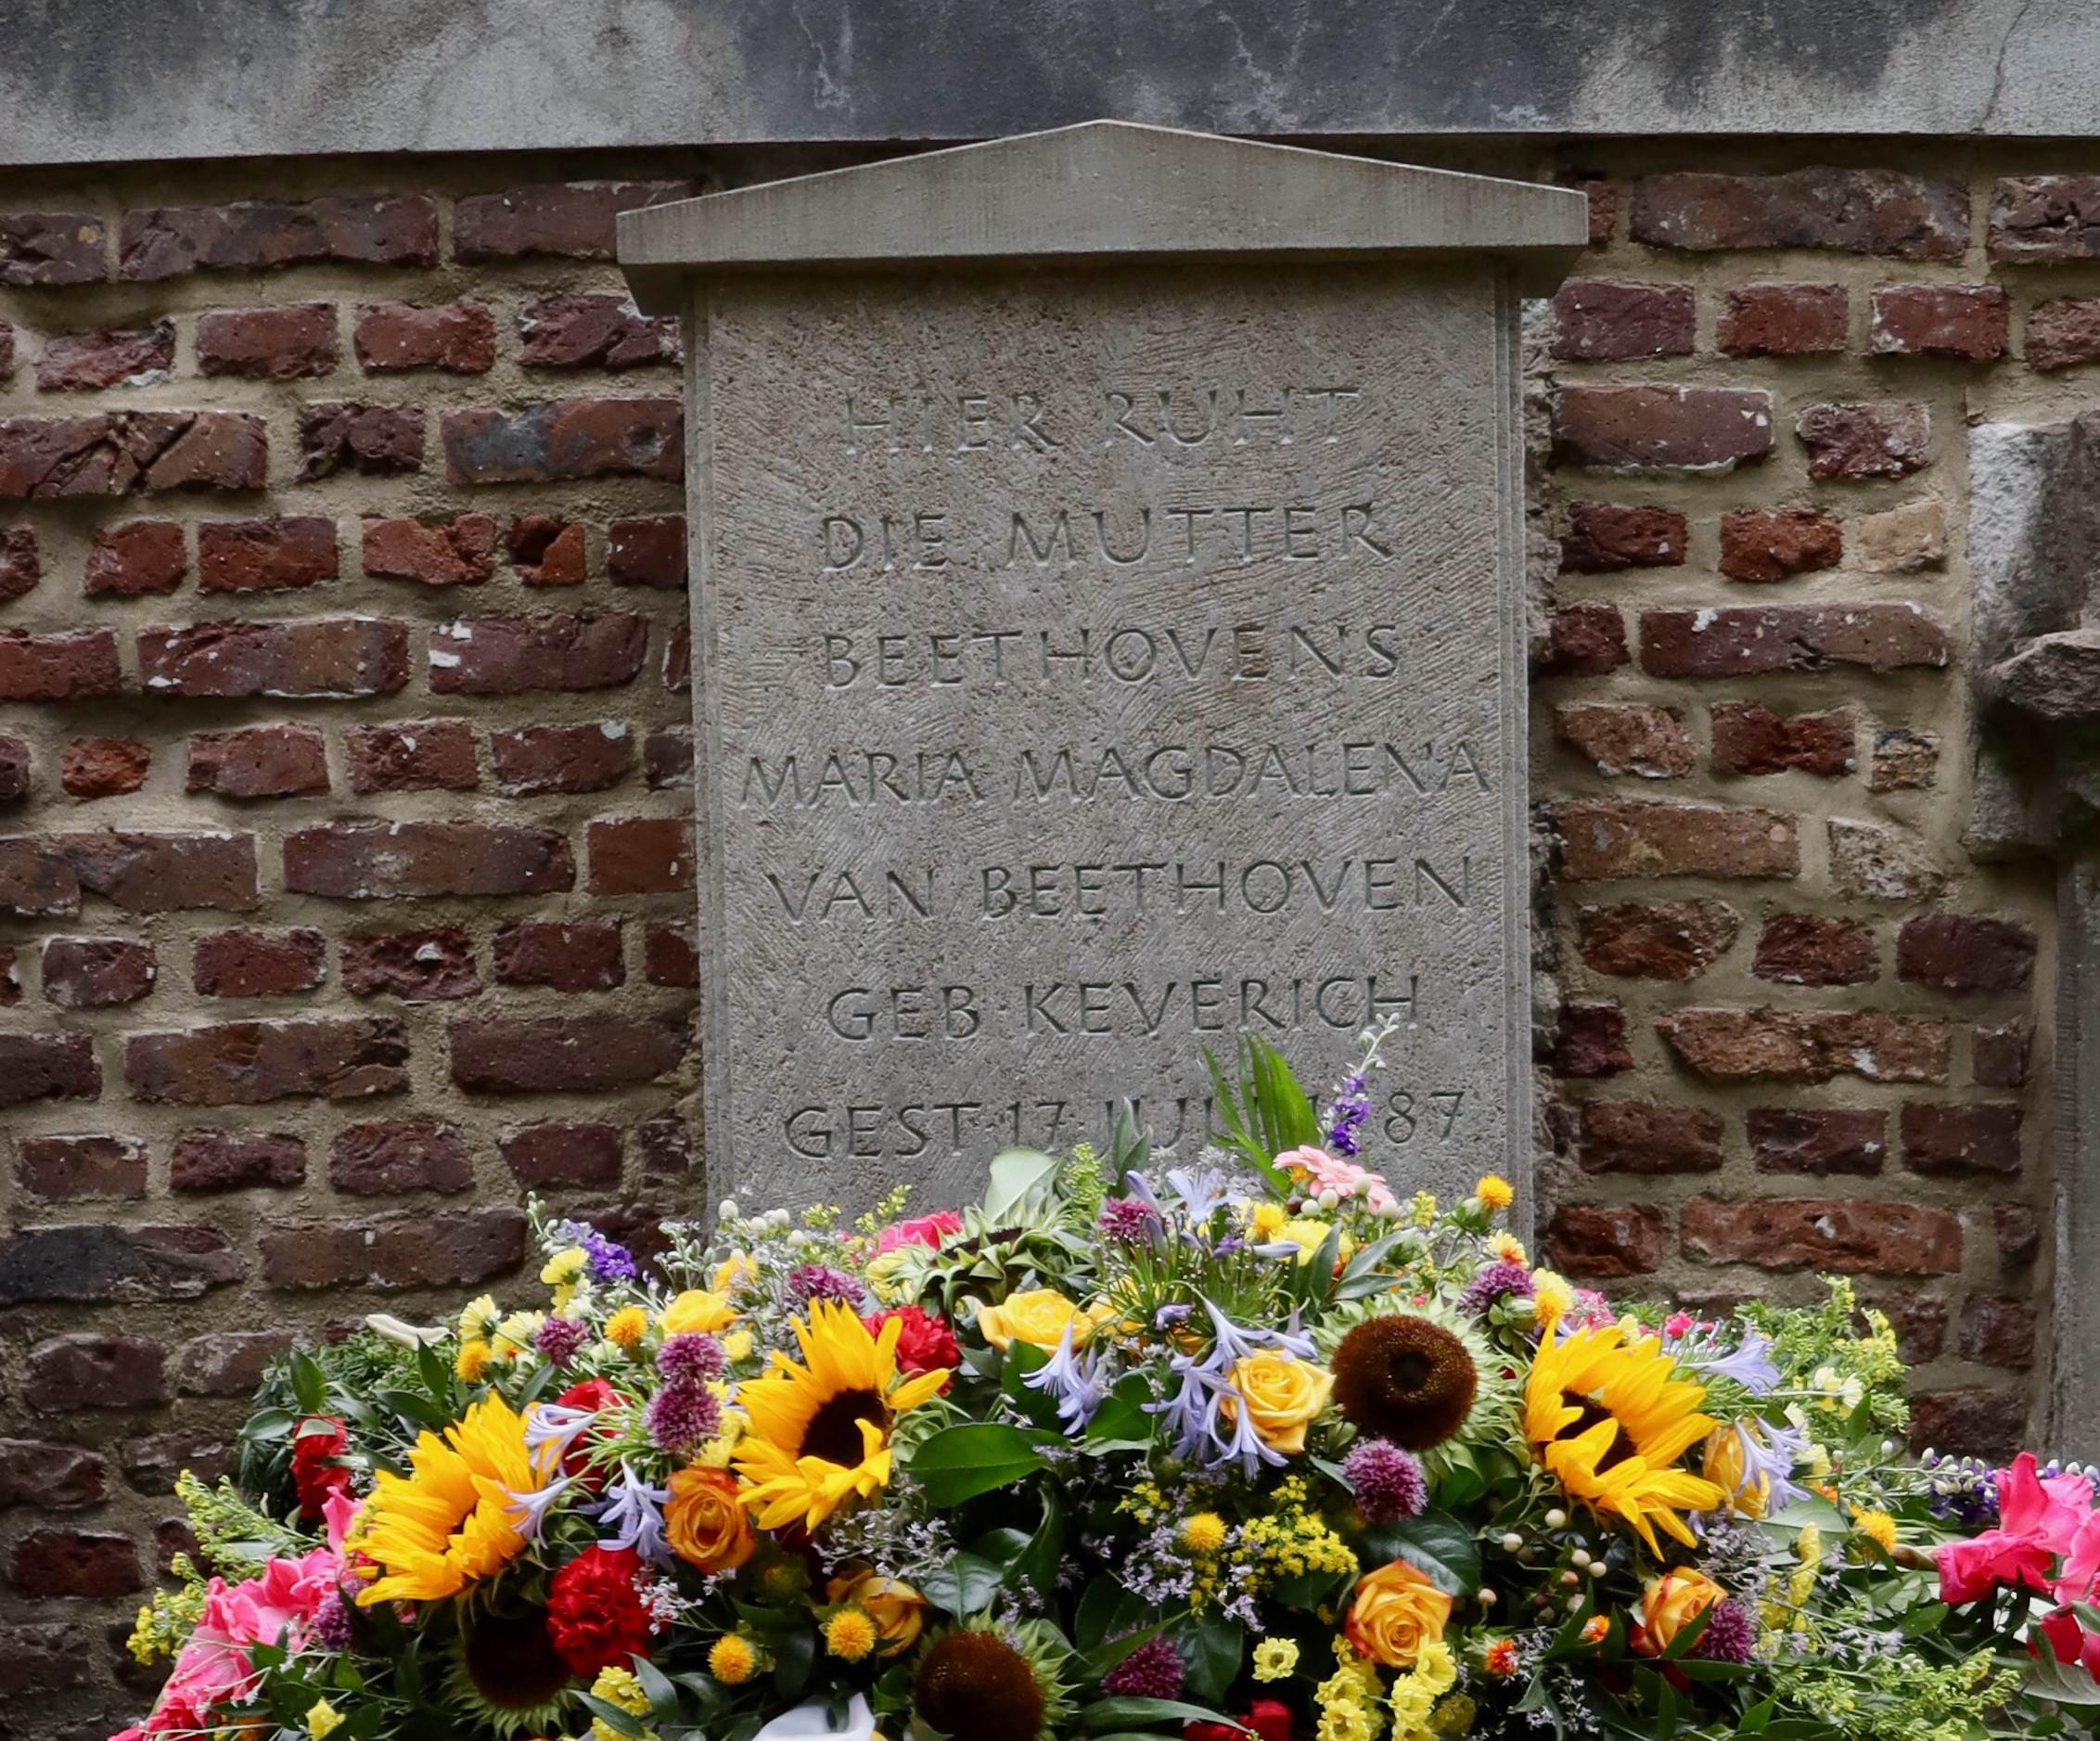 Das Grab der Mutter Beethovens auf dem Alten Friedhof in Bonn